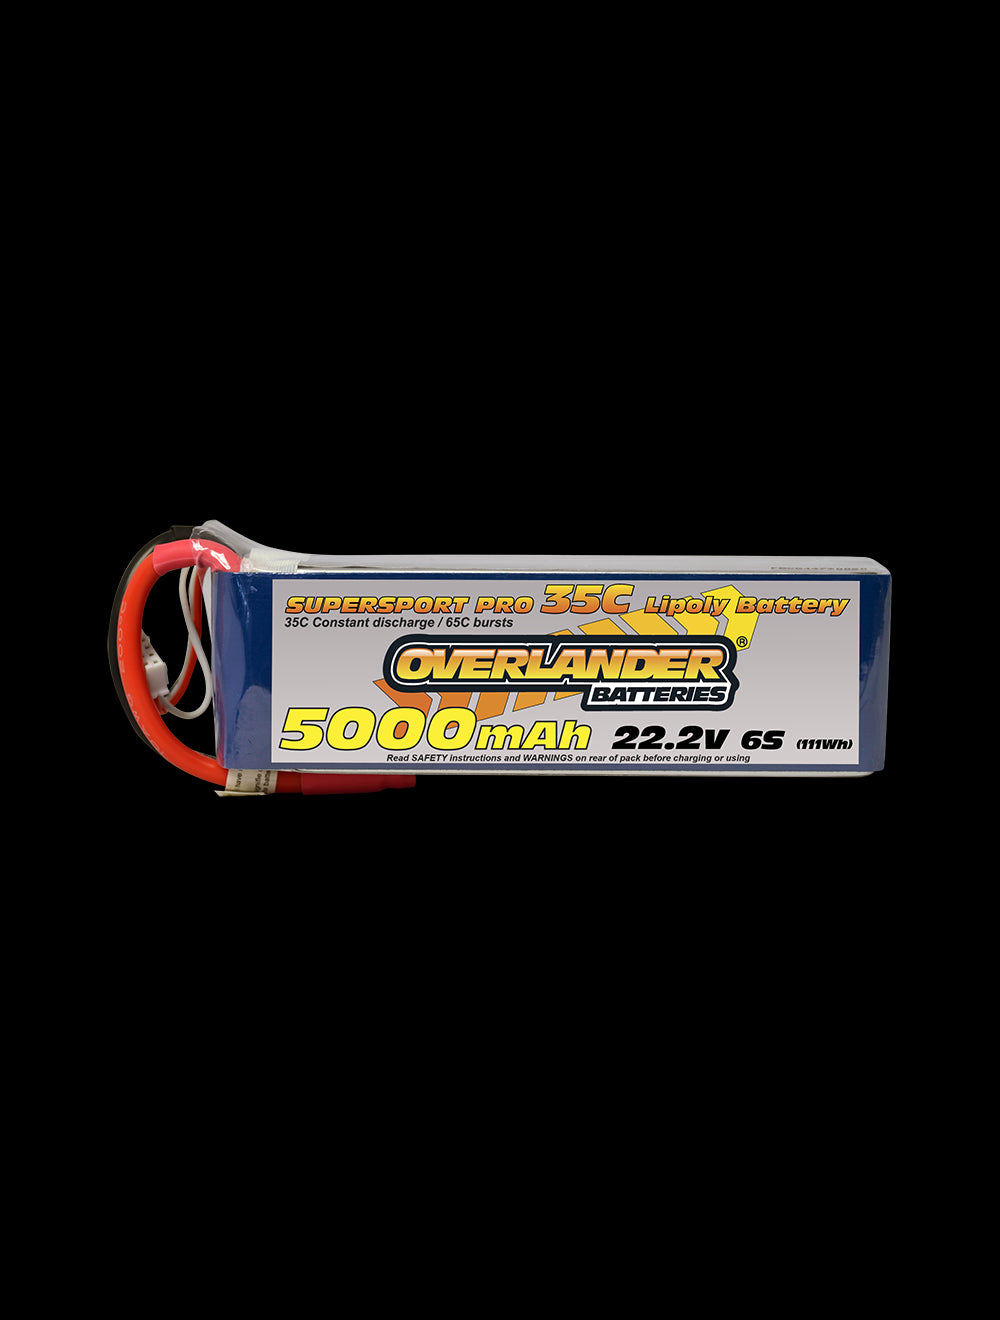 Overlander 5000mAh 22.2V 6S 35C Supersport Pro LiPo Battery - EC5 Connector 2580